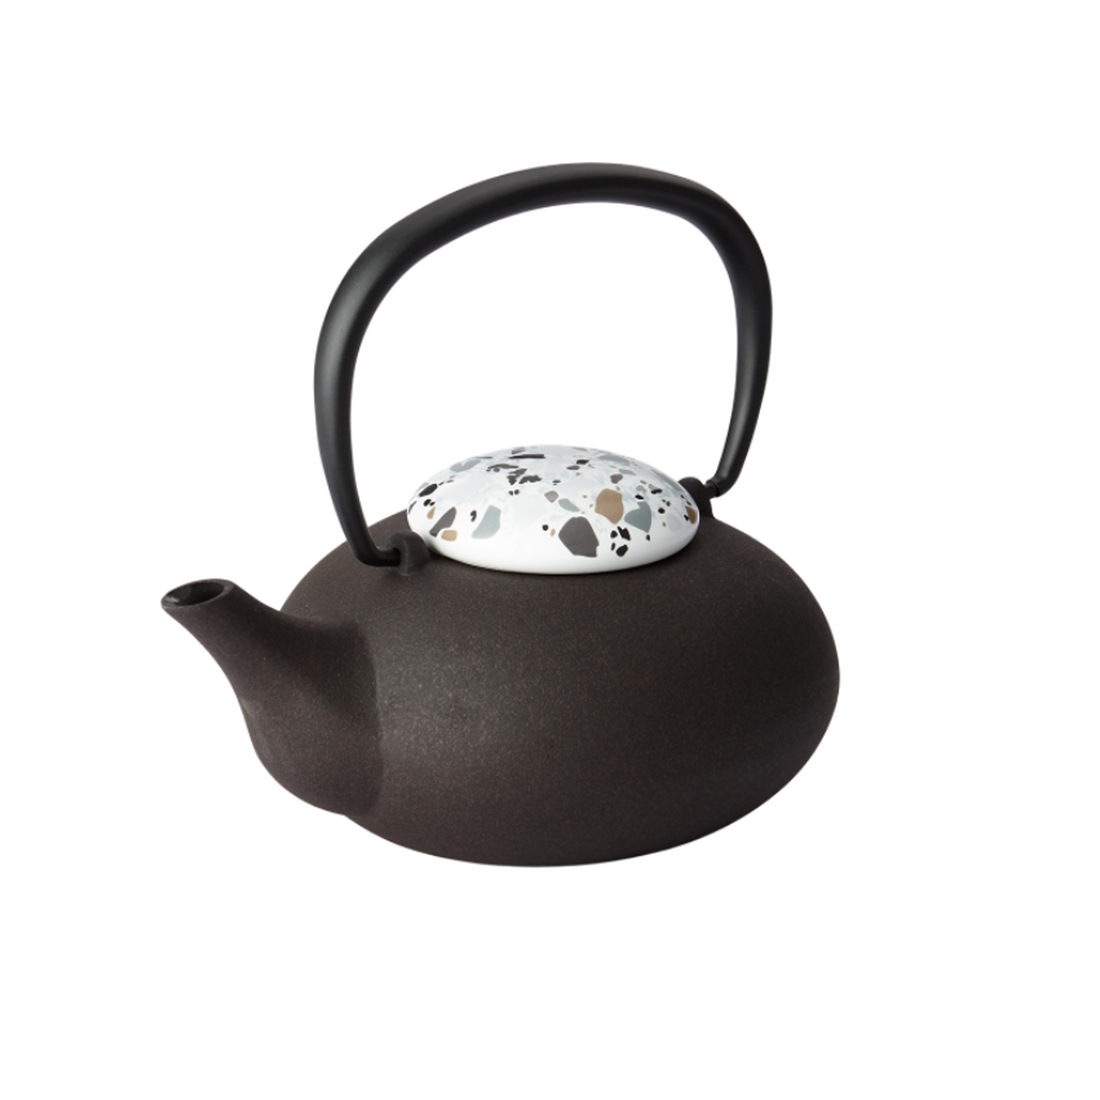 zens teapot